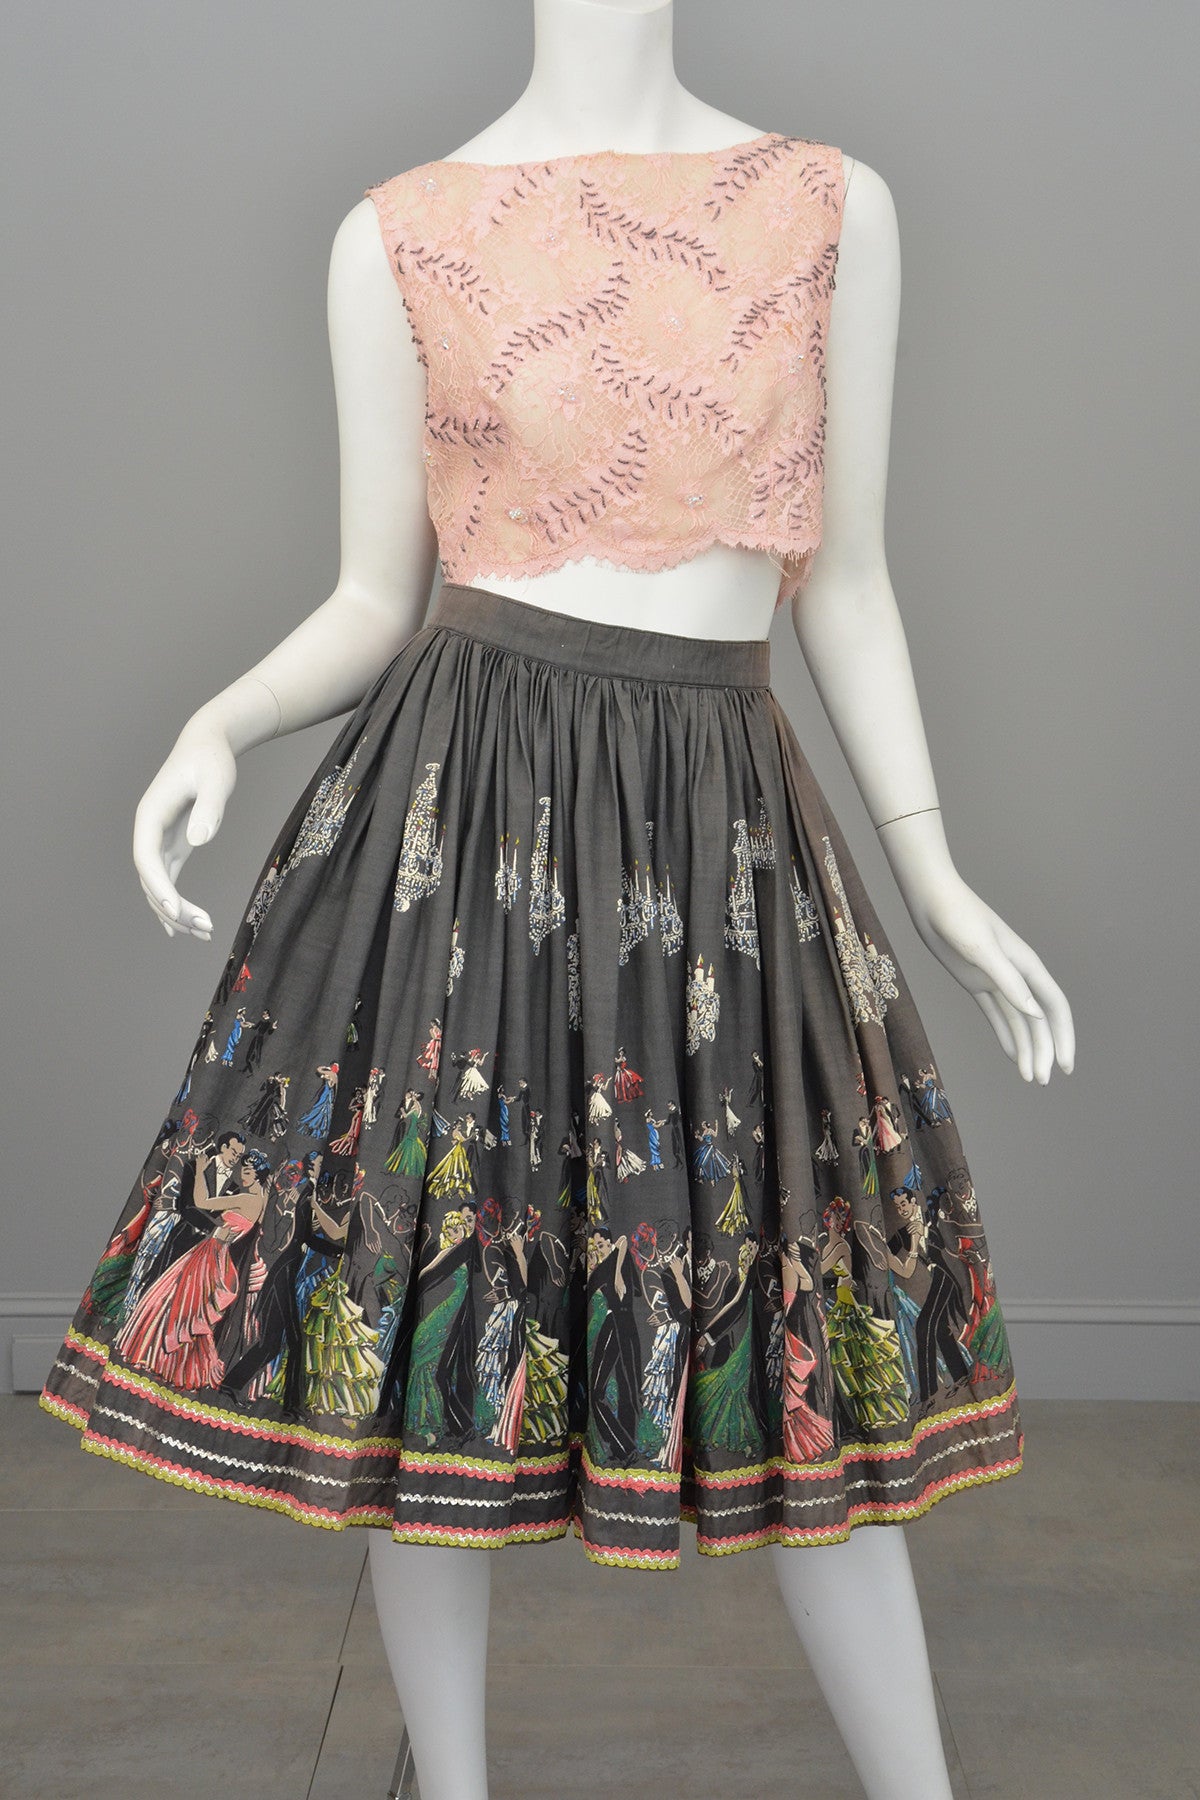 1950s Novelty Print Skirt Ballroom Scene Vintage Skirt Pinup